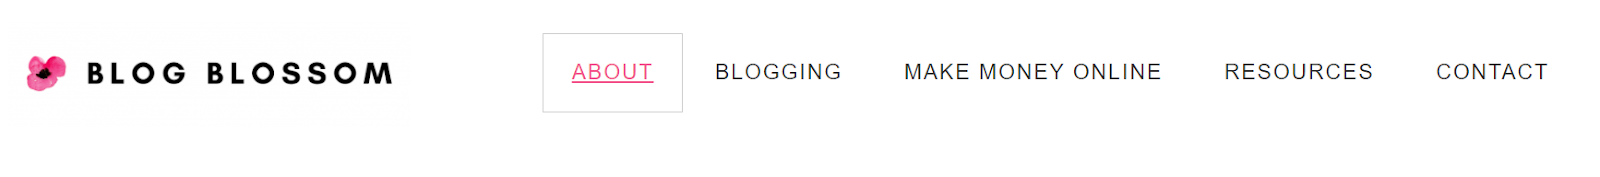 Blog Blossom